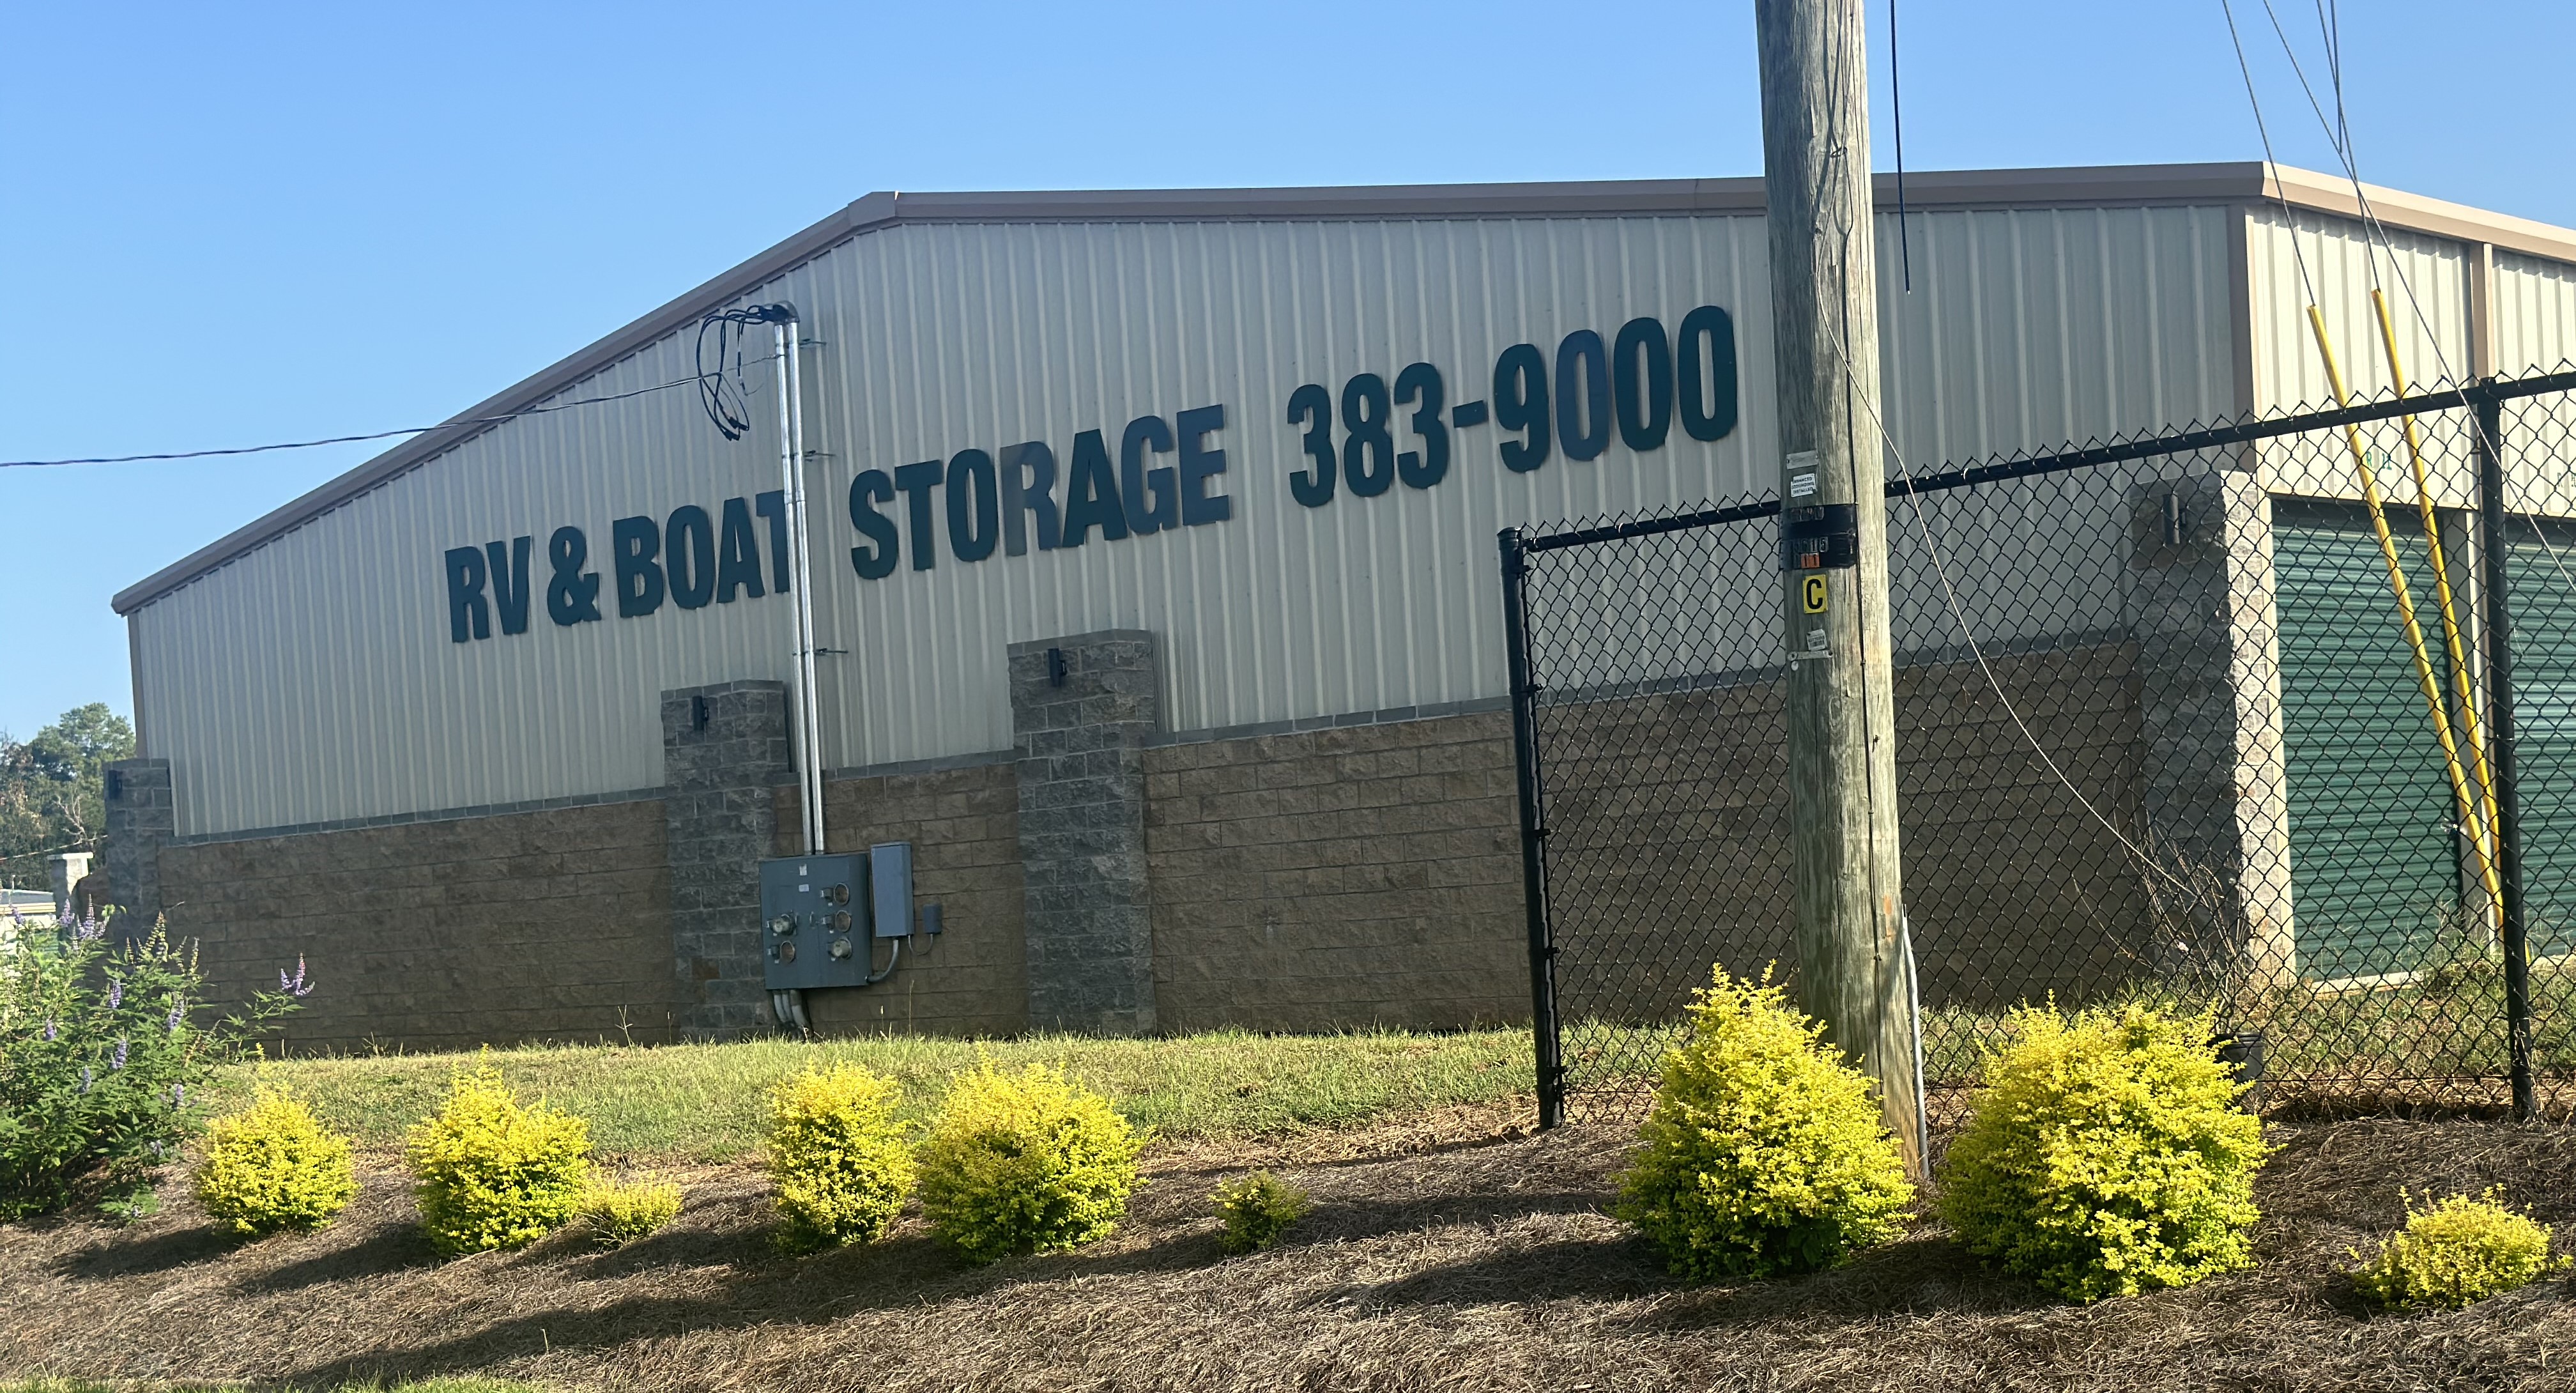 Secure Storage in Greenville, AL